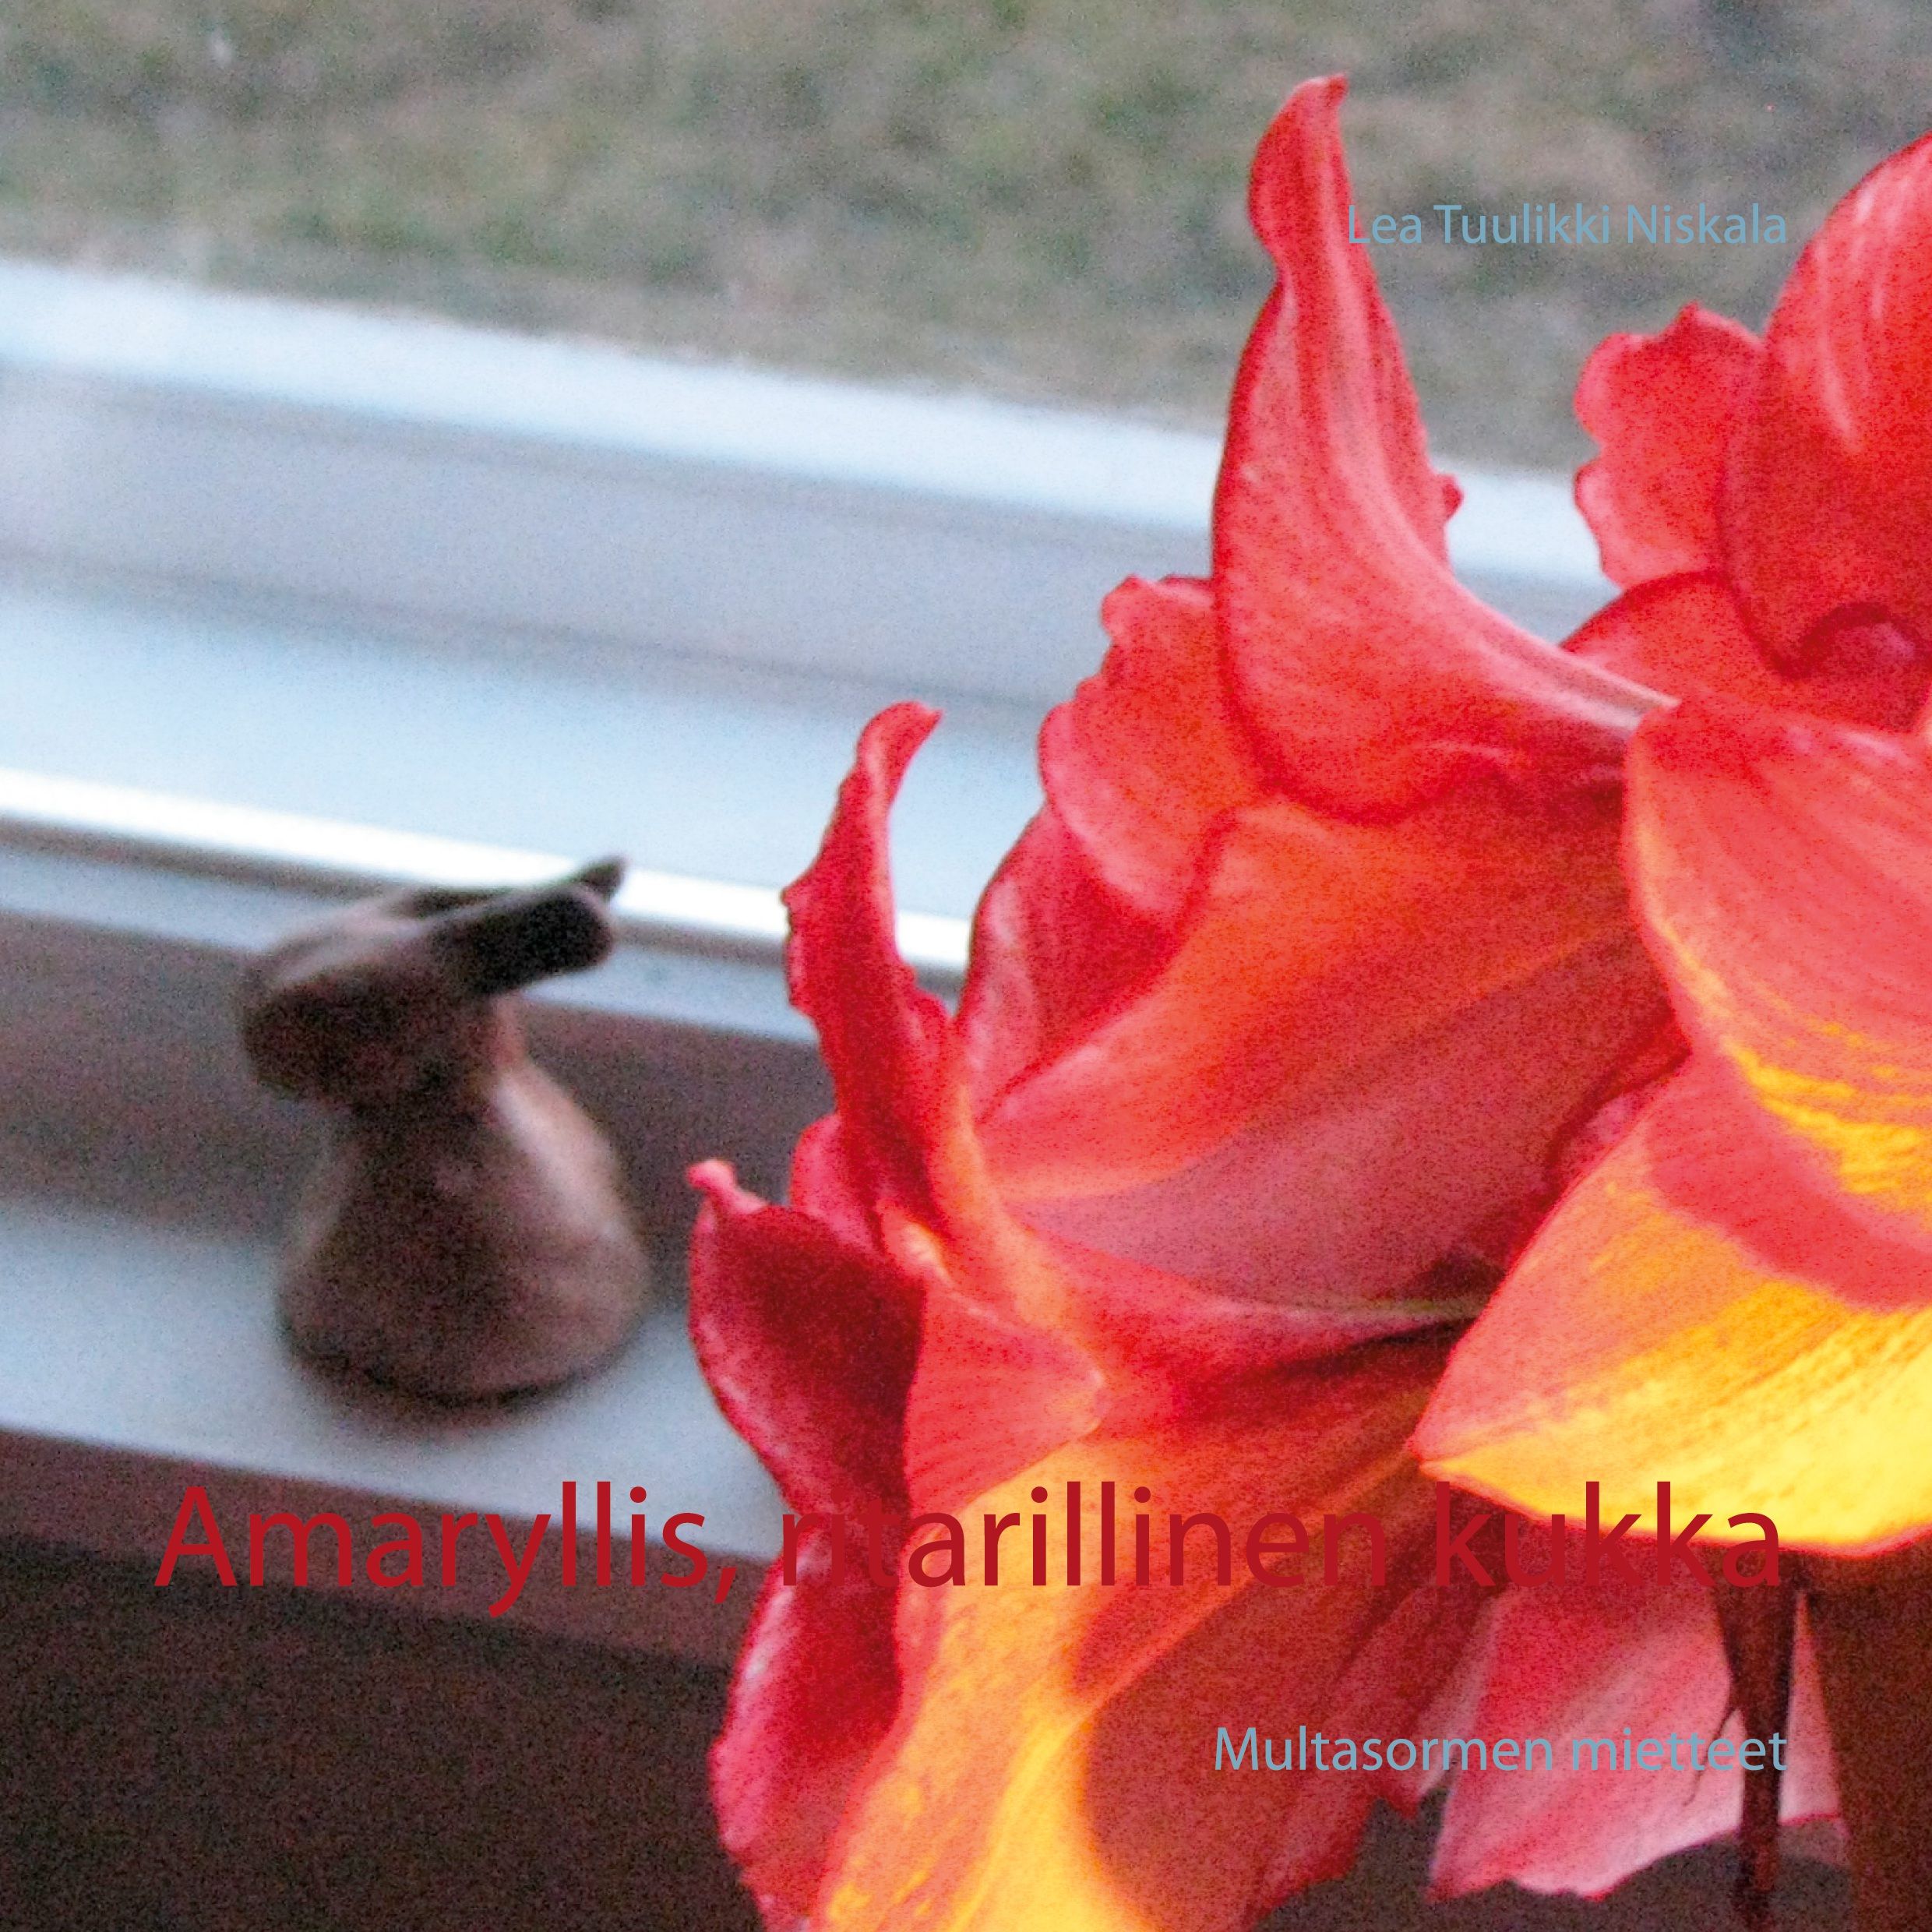 Lea Tuulikki Niskala : Amaryllis, ritarillinen kukka